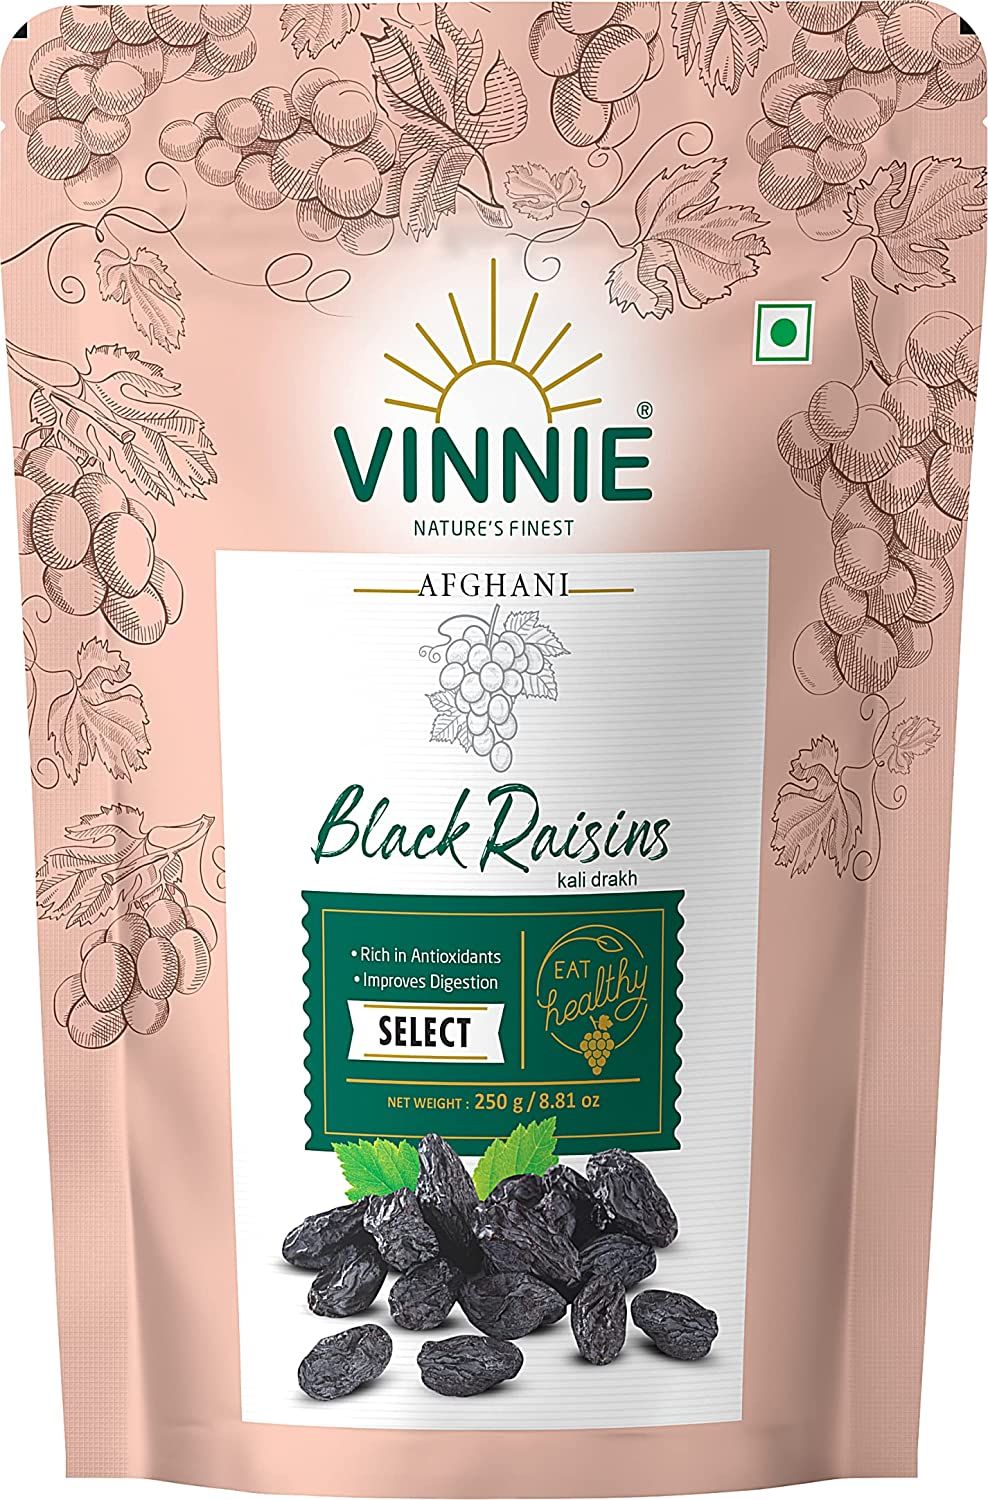 Vinnie Afghani Black Raisins Image